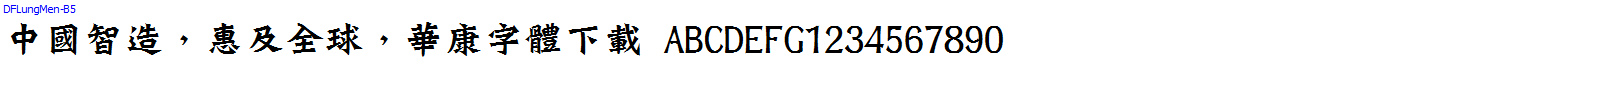 華康字體DFLungMen-B5.ttc